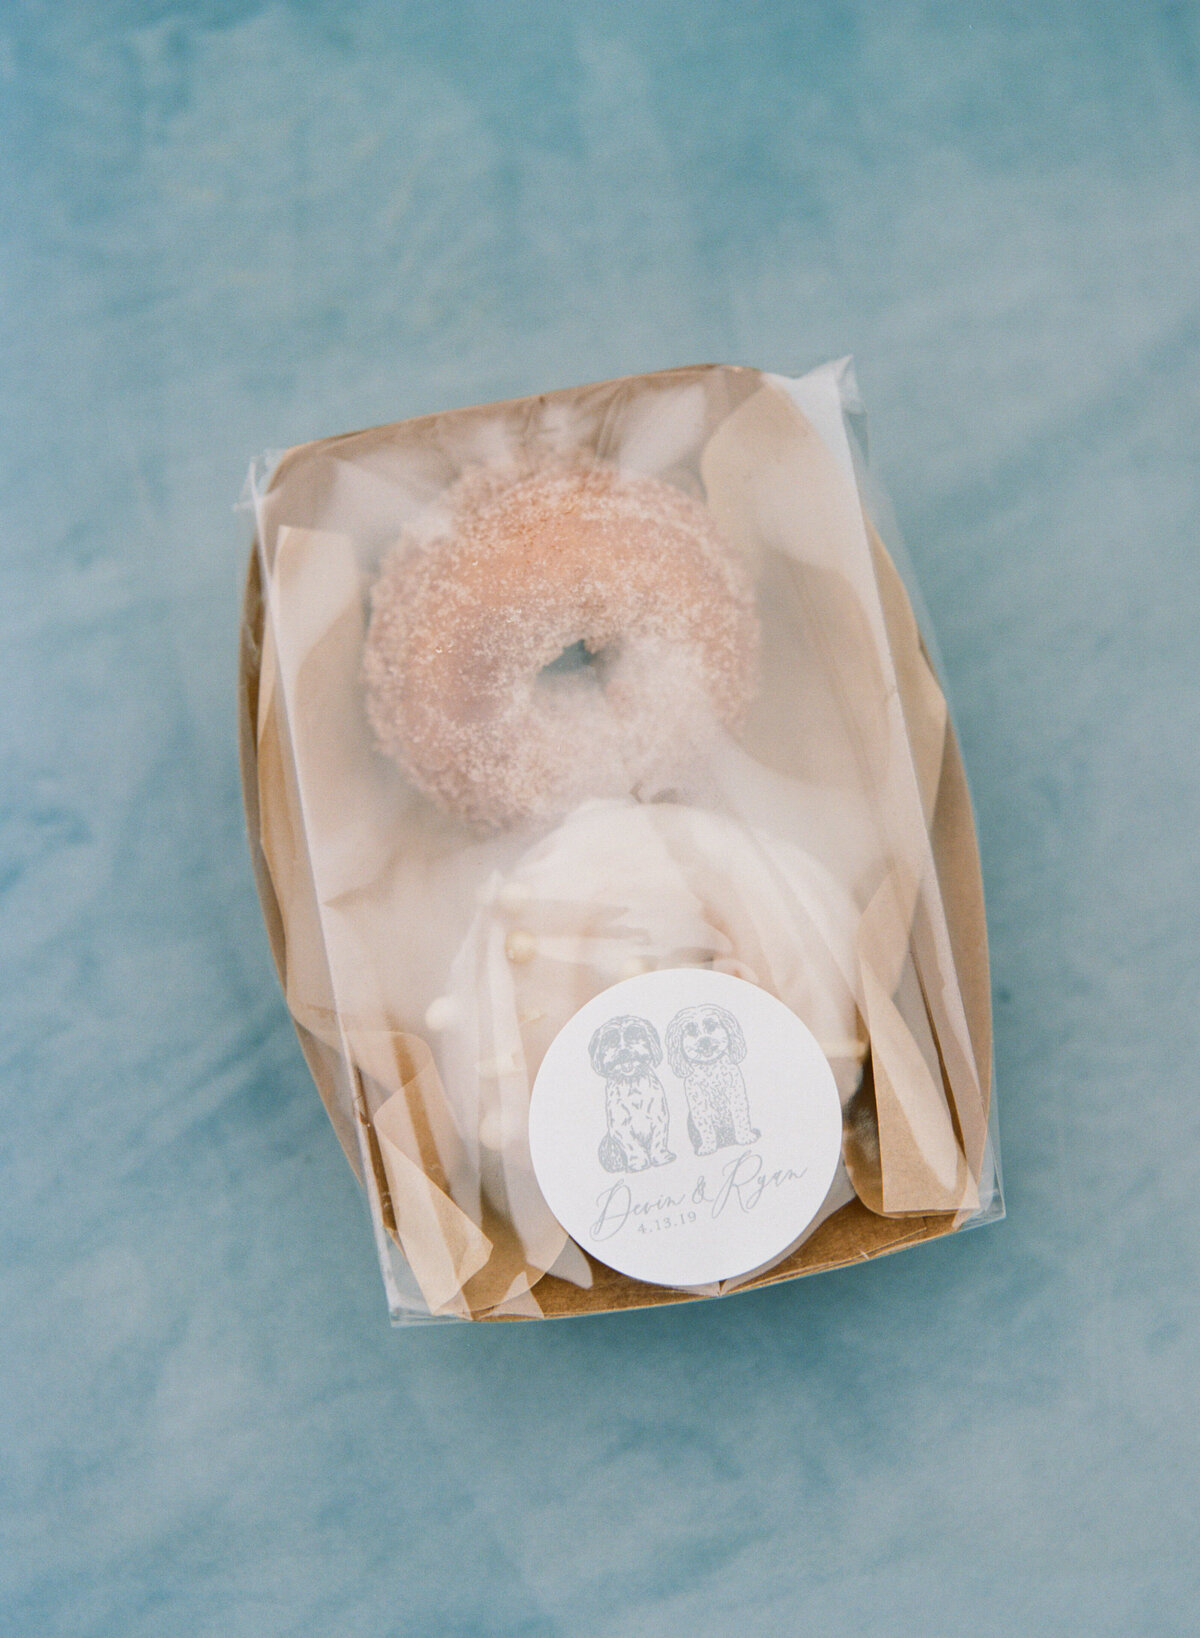 06-wedding-donut-favor-welcome-bag